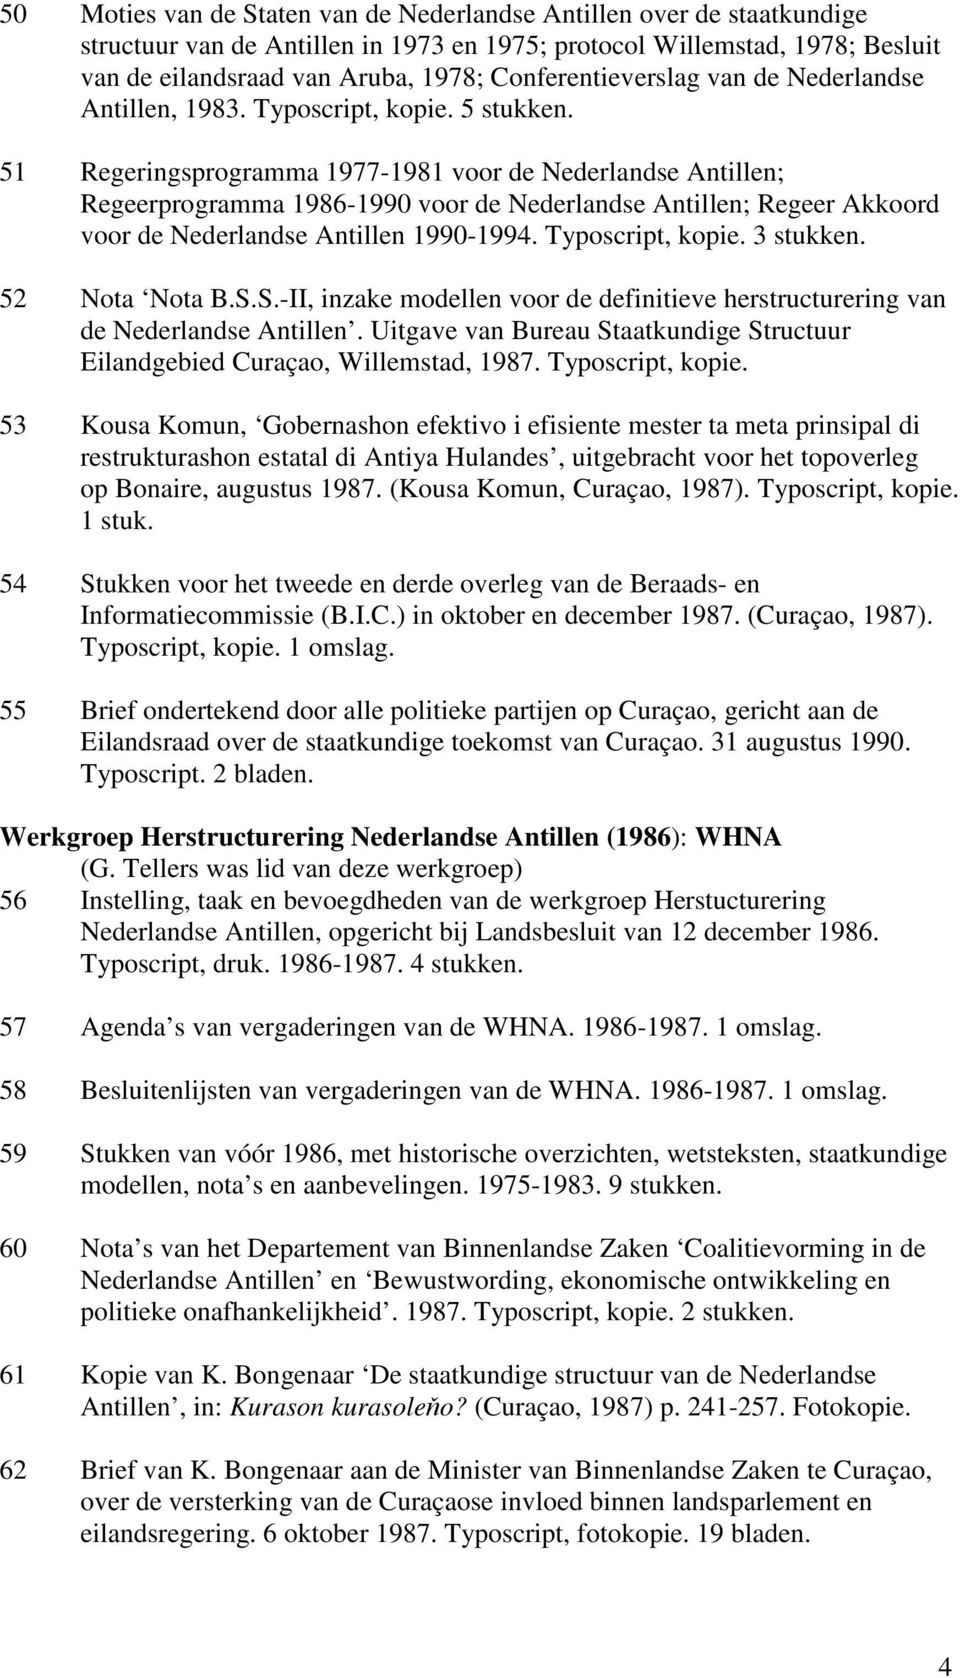 51 Regeringsprogramma 1977-1981 voor de Nederlandse Antillen; Regeerprogramma 1986-1990 voor de Nederlandse Antillen; Regeer Akkoord voor de Nederlandse Antillen 1990-1994. Typoscript, kopie.